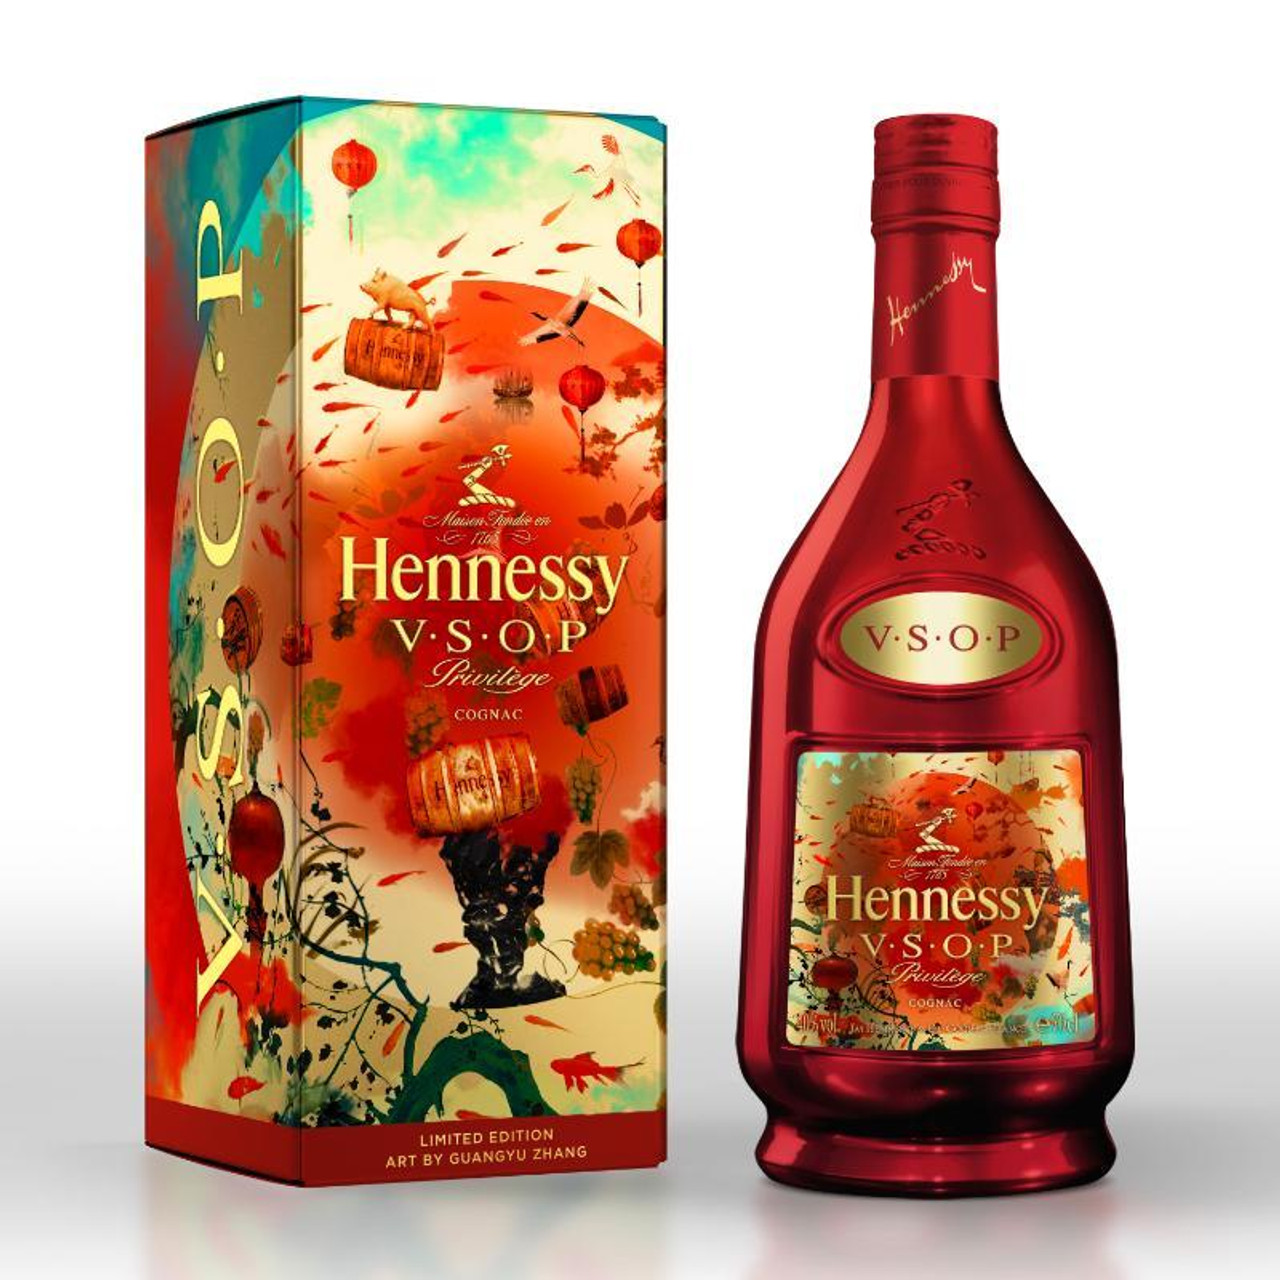 Hennessy Cognac Vsop Privilege - 1.75 L bottle